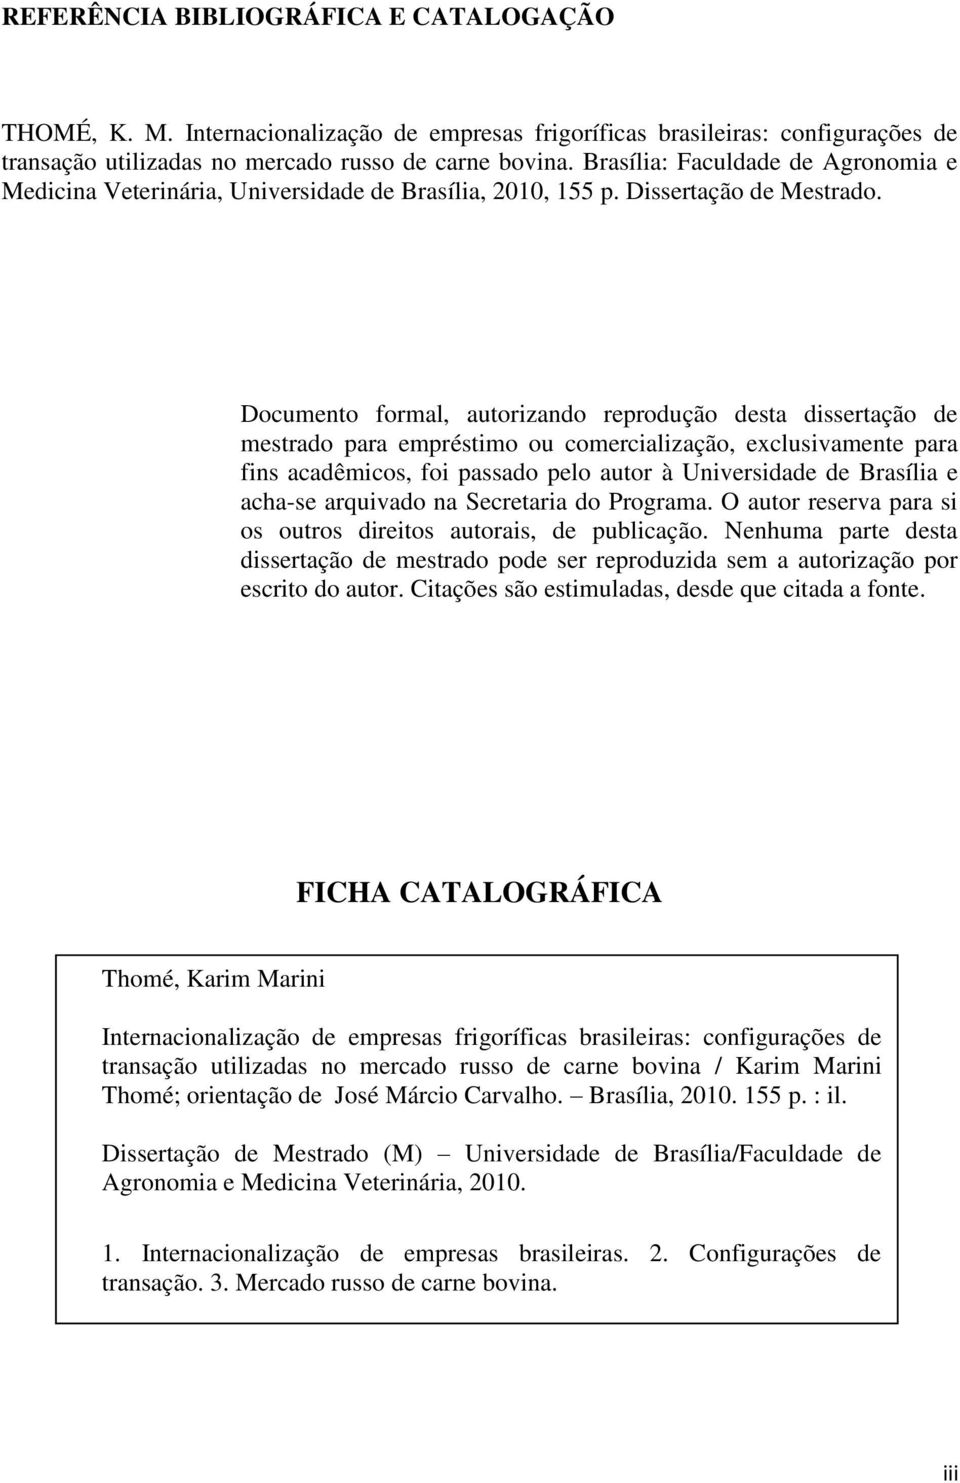 Documento formal, autorizando reprodução desta dissertação de mestrado para empréstimo ou comercialização, exclusivamente para fins acadêmicos, foi passado pelo autor à Universidade de Brasília e